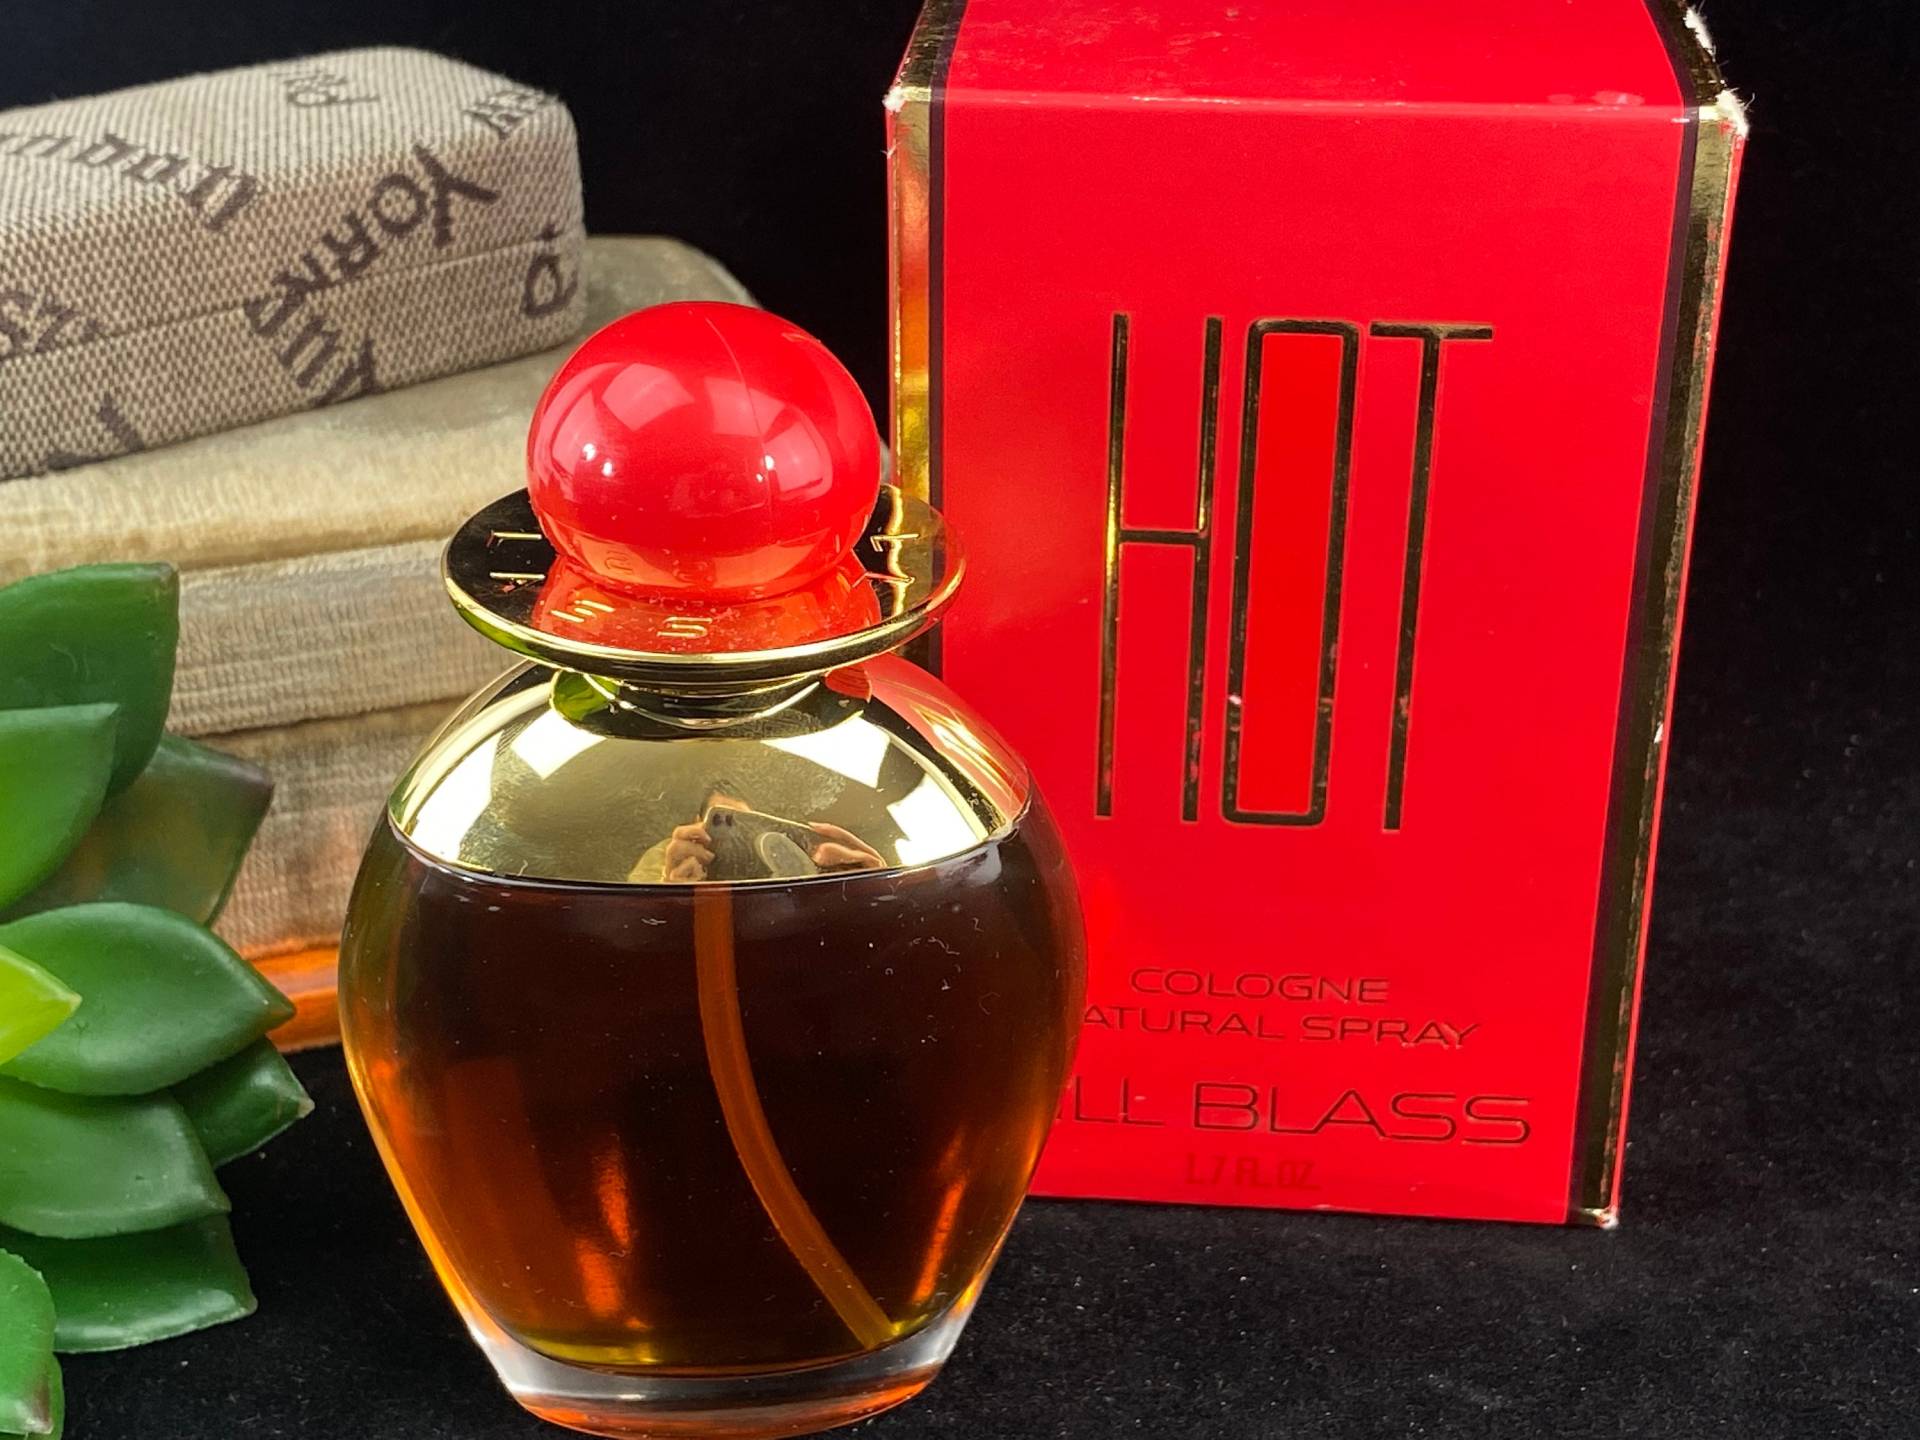 Bill Blass Hot Parfum Köln Natural Spray 1, 7 Oz, Vintage Voll Flasche in Original-Box 1990Er Jahre von VintageInBloom